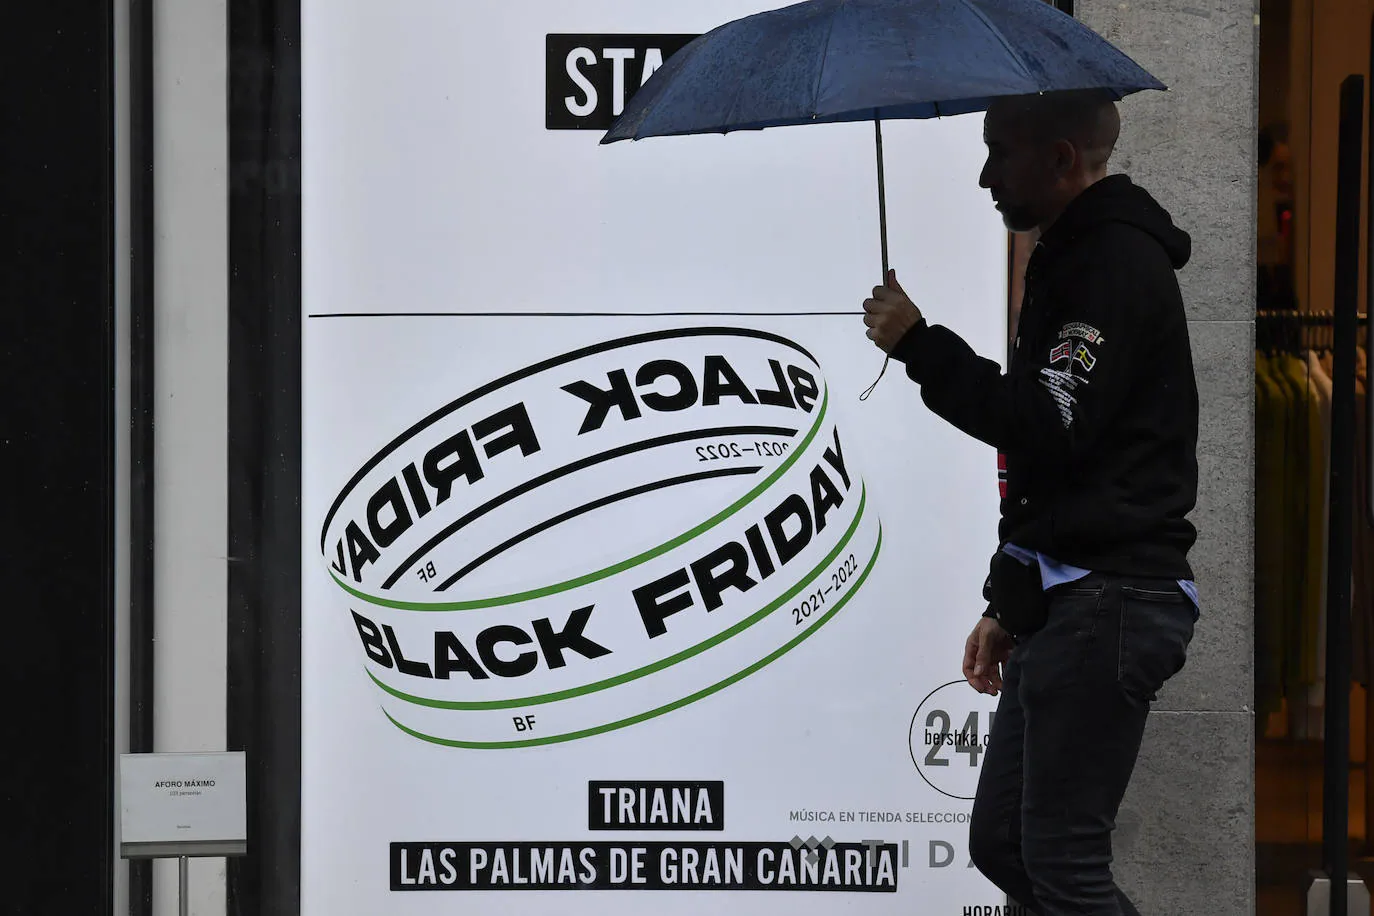 La previsión de caída de ventas del 'Black Friday' recorta la contratación en Canarias al nivel de 2018